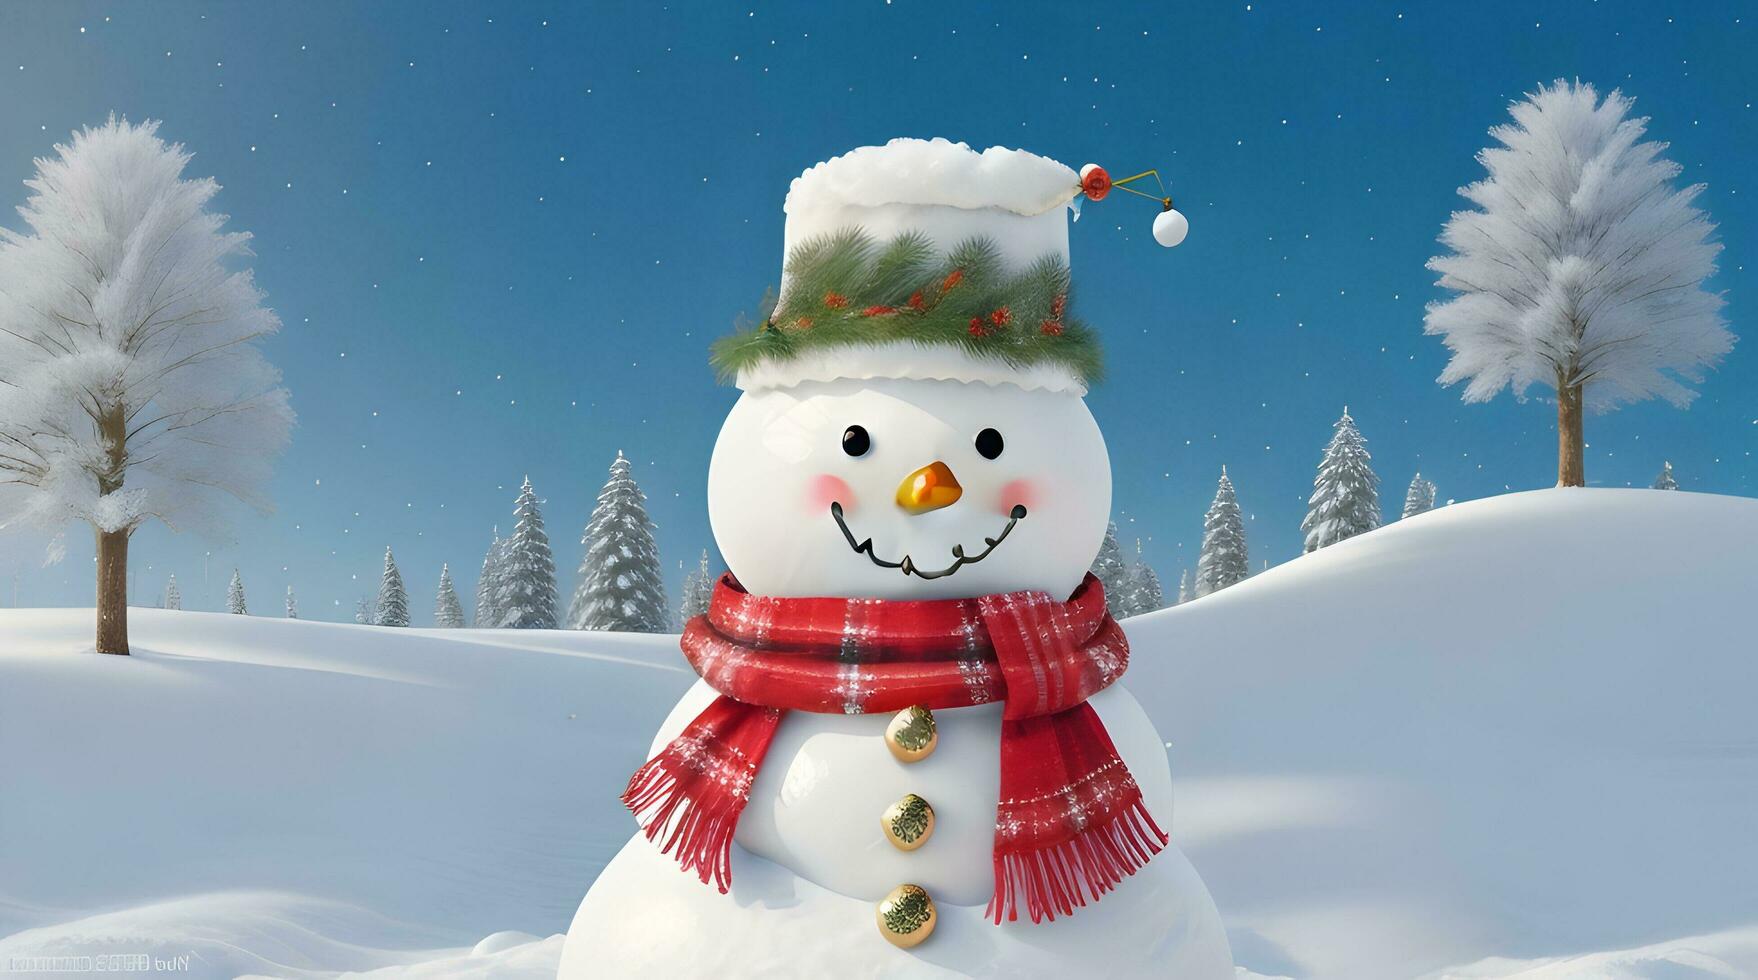 feestelijk Kerstmis achtergrond met sneeuwman foto